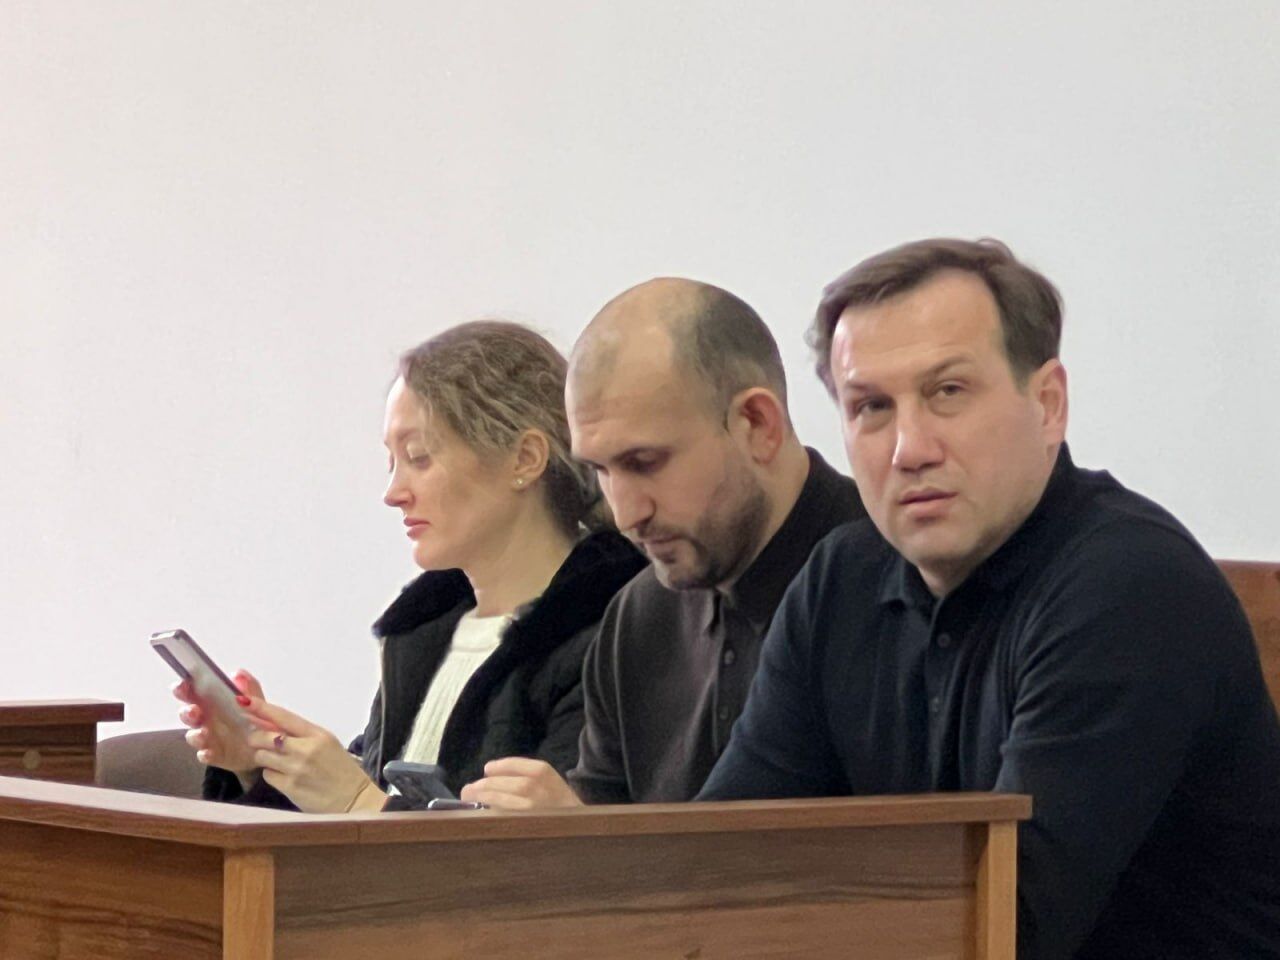 26 березня цього року відбулося чергове слухання справи щодо нібито побиття Максима Гайового, яке відвідала команда СтопКору